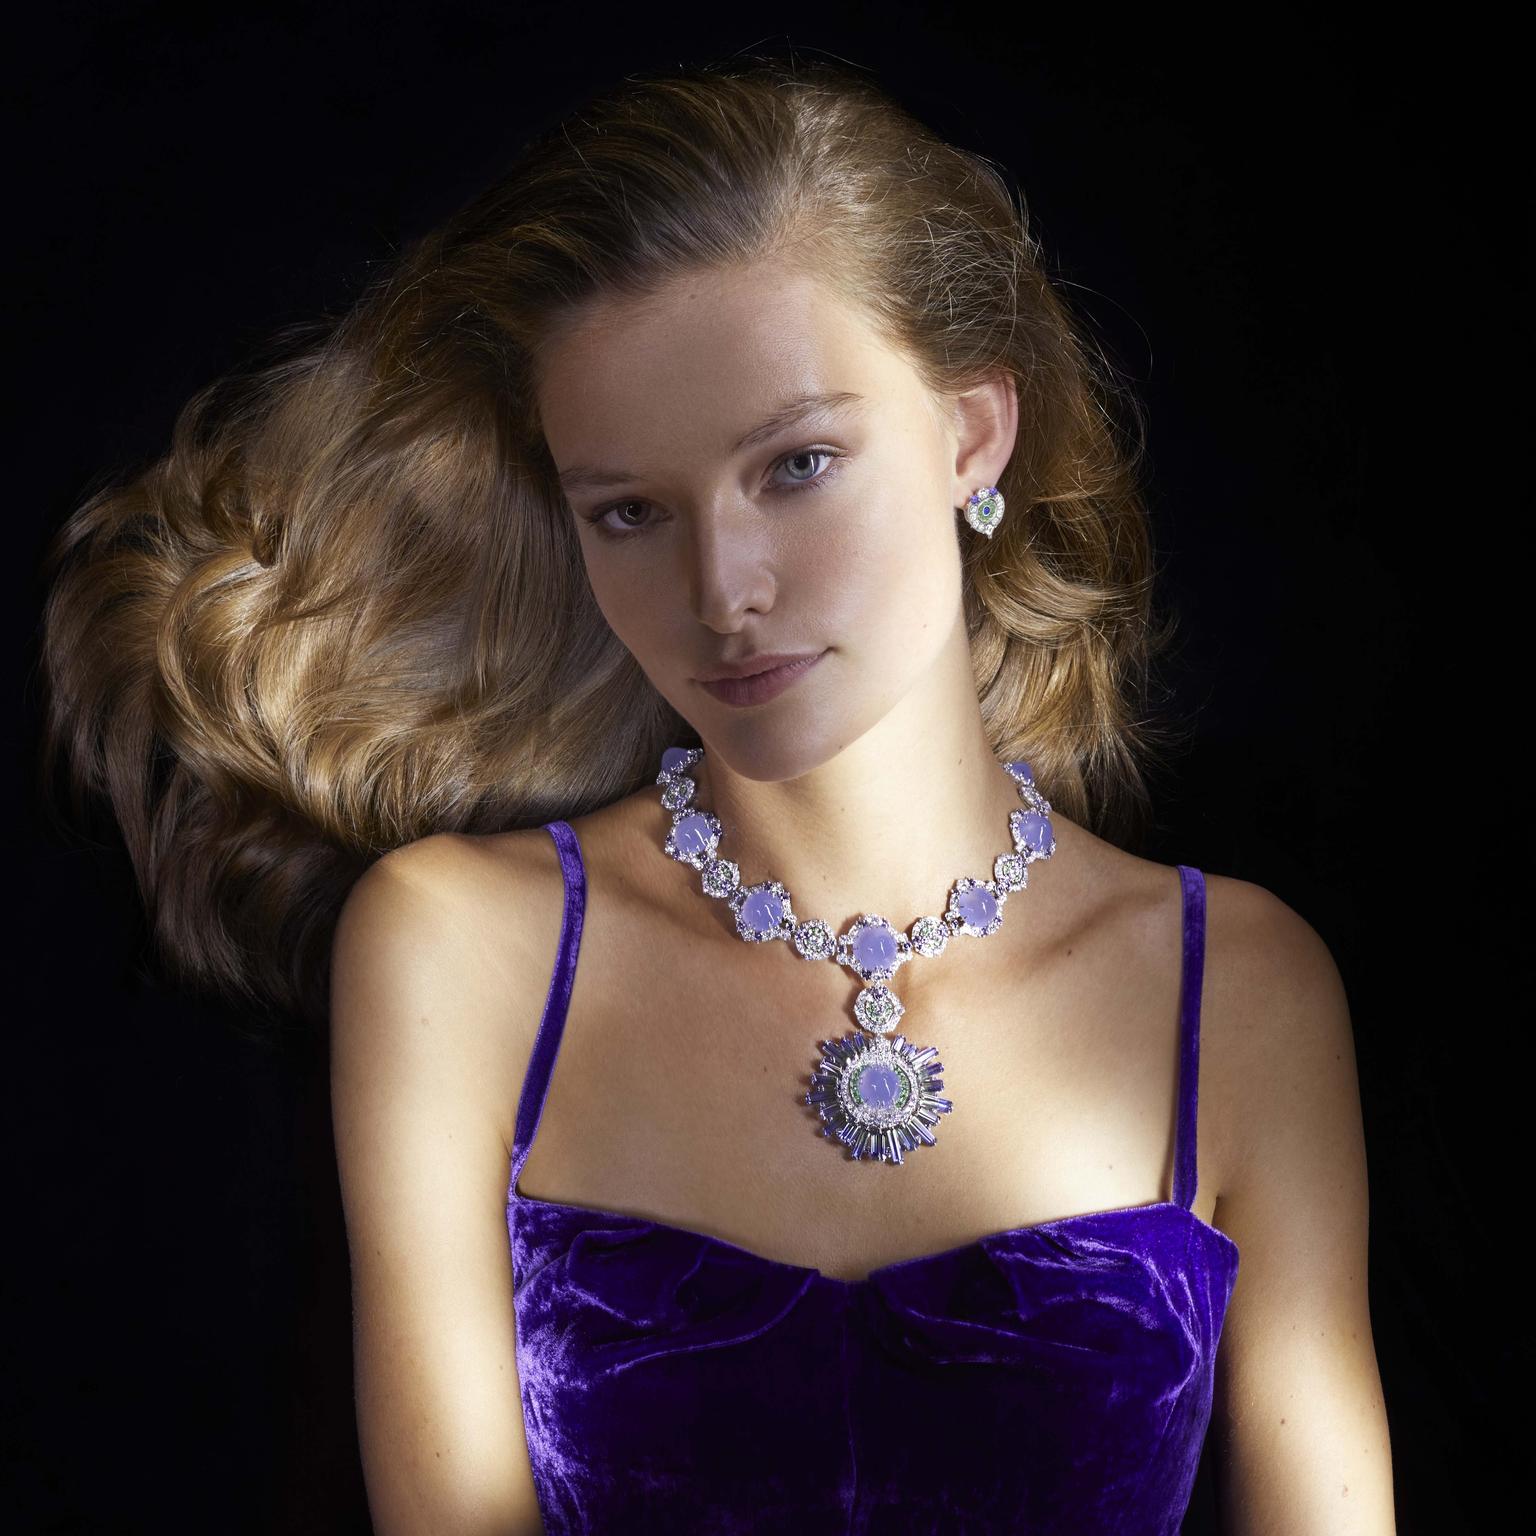 Céphéide necklace by Van Cleef & Arpels Van Cleef & Arpels | The Jewellery Editor